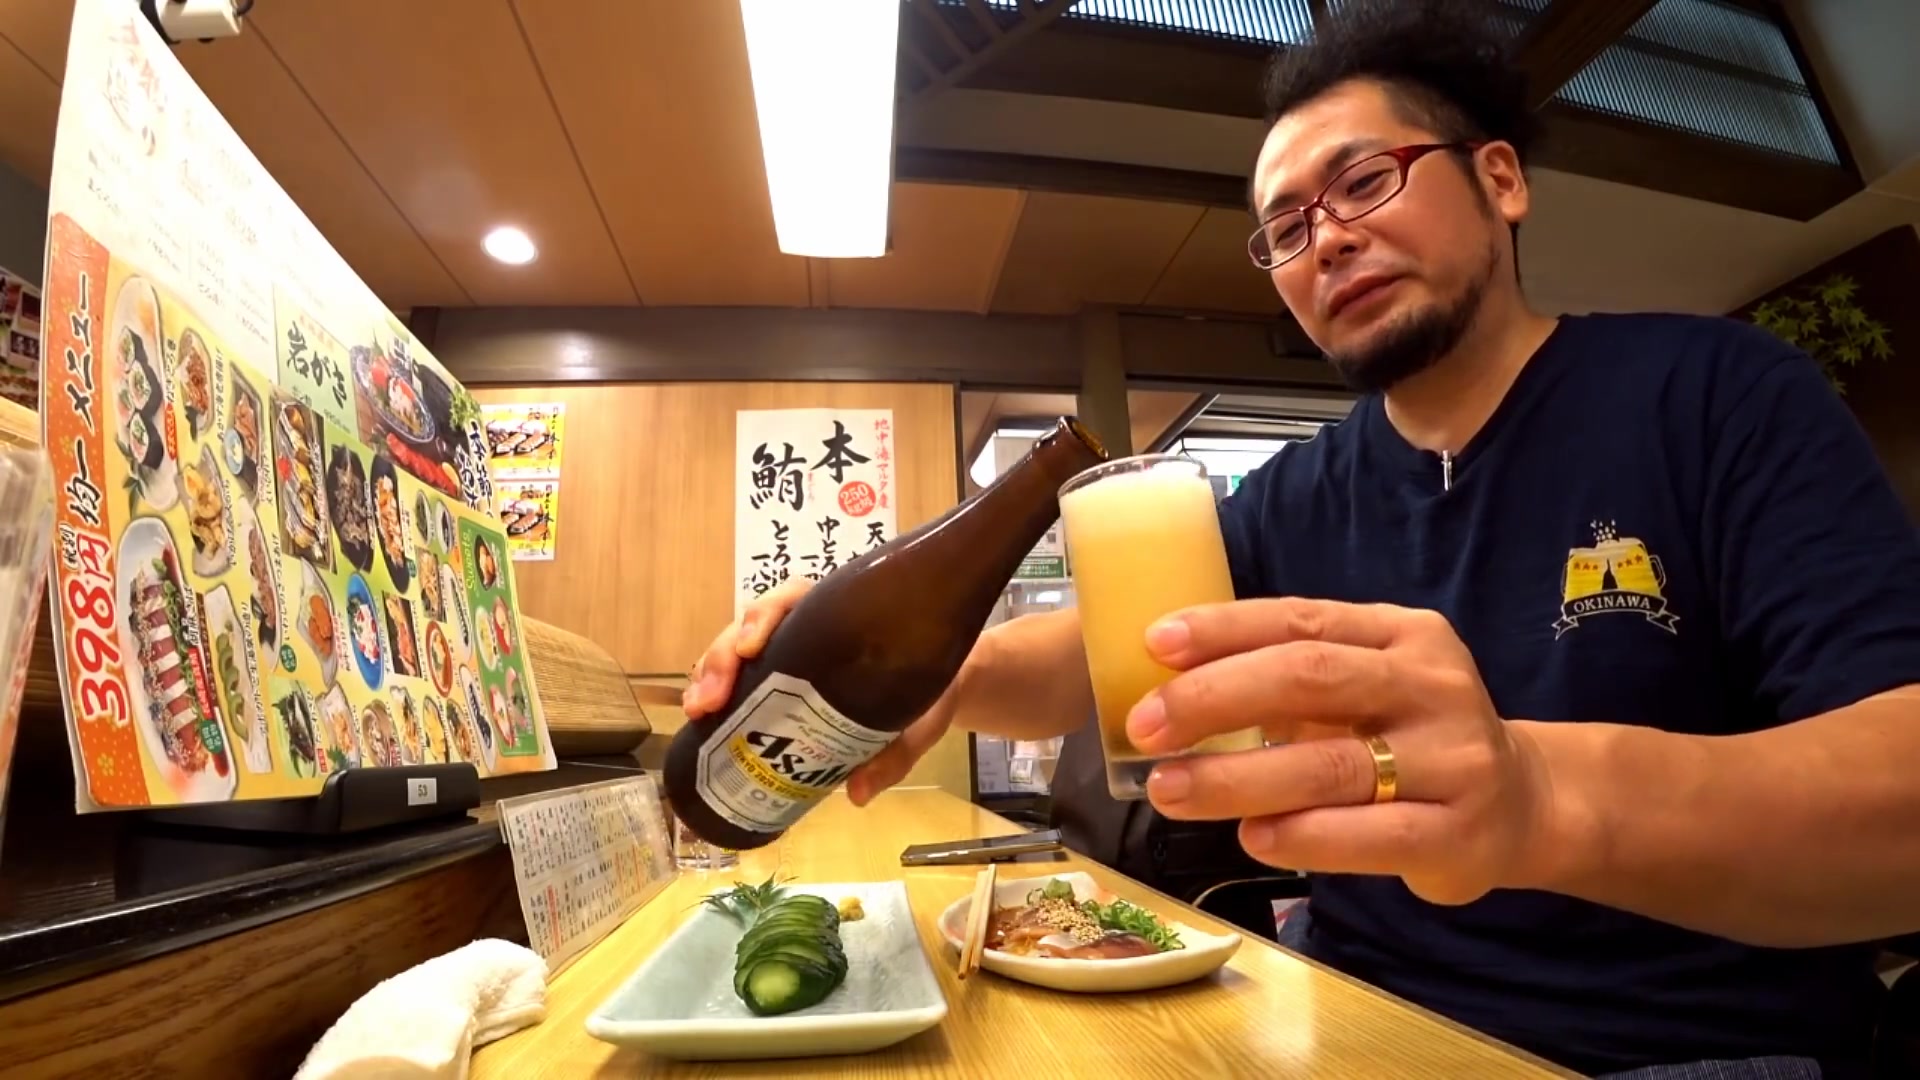 【啤酒怪】大阪がんこ寿司的芝麻鲭鱼~南蛮炸鸡和腌黄瓜~和银色的家伙绝配~